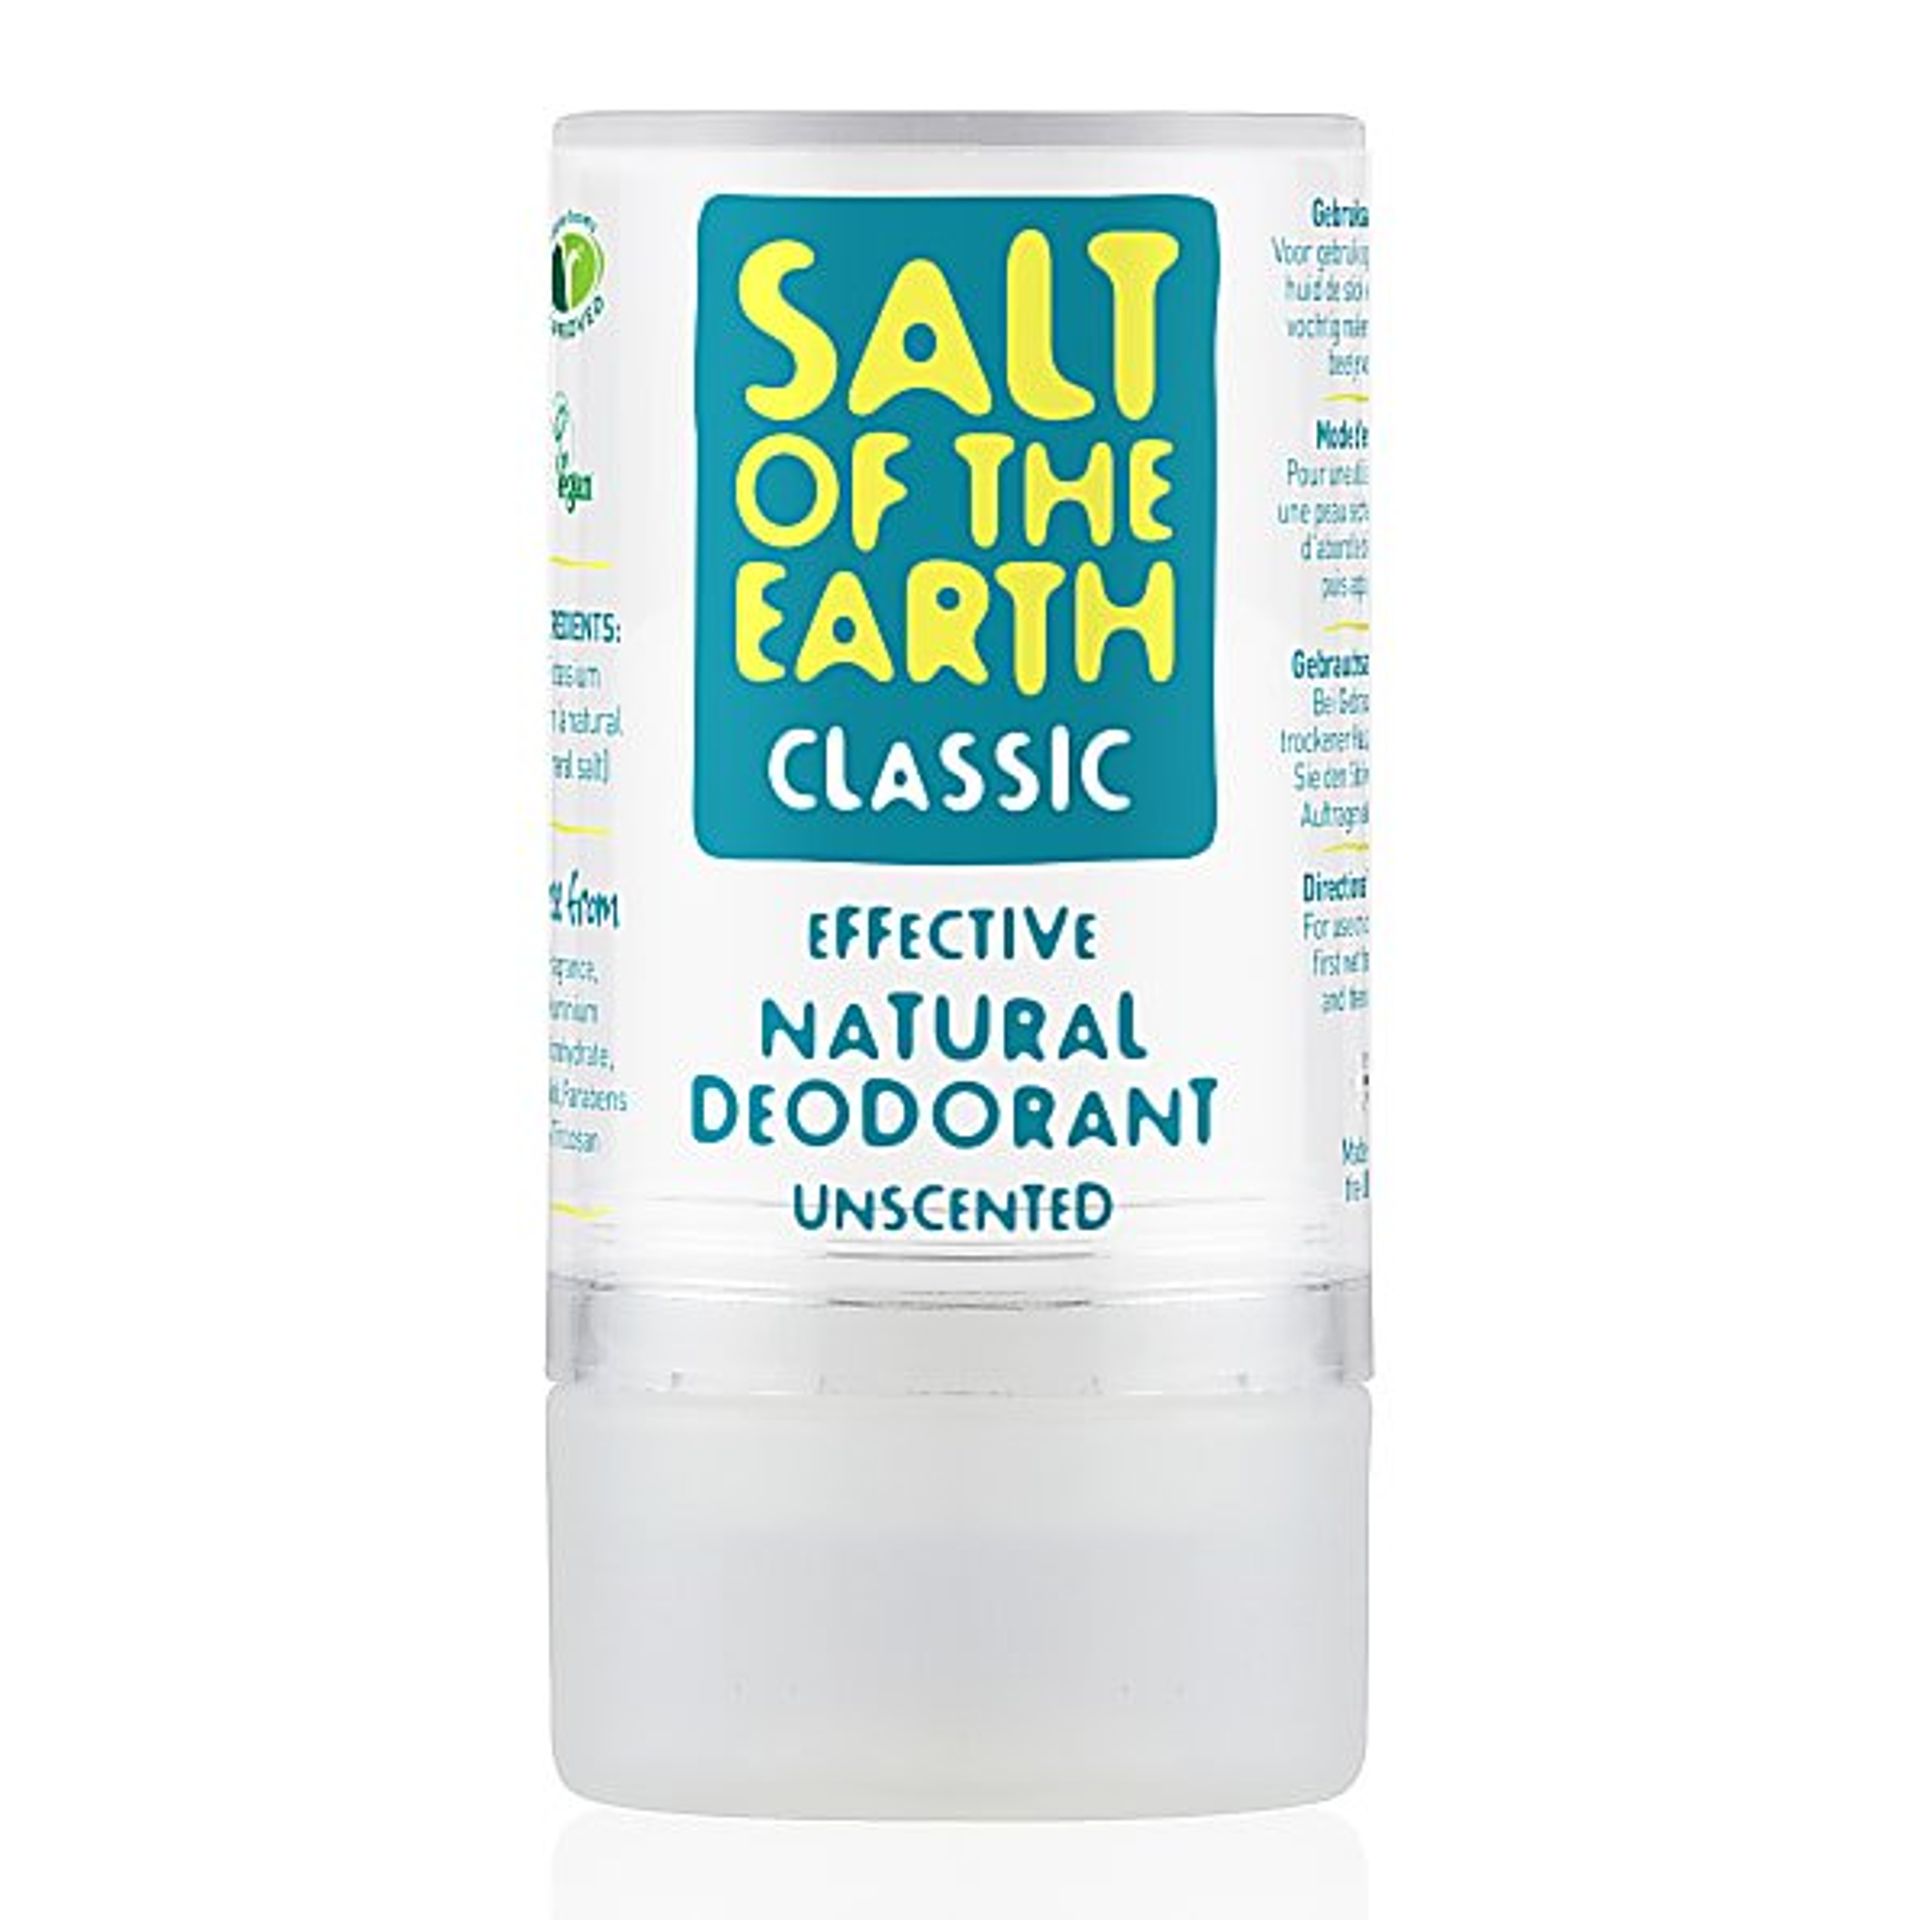 Natuurlijke deodorant